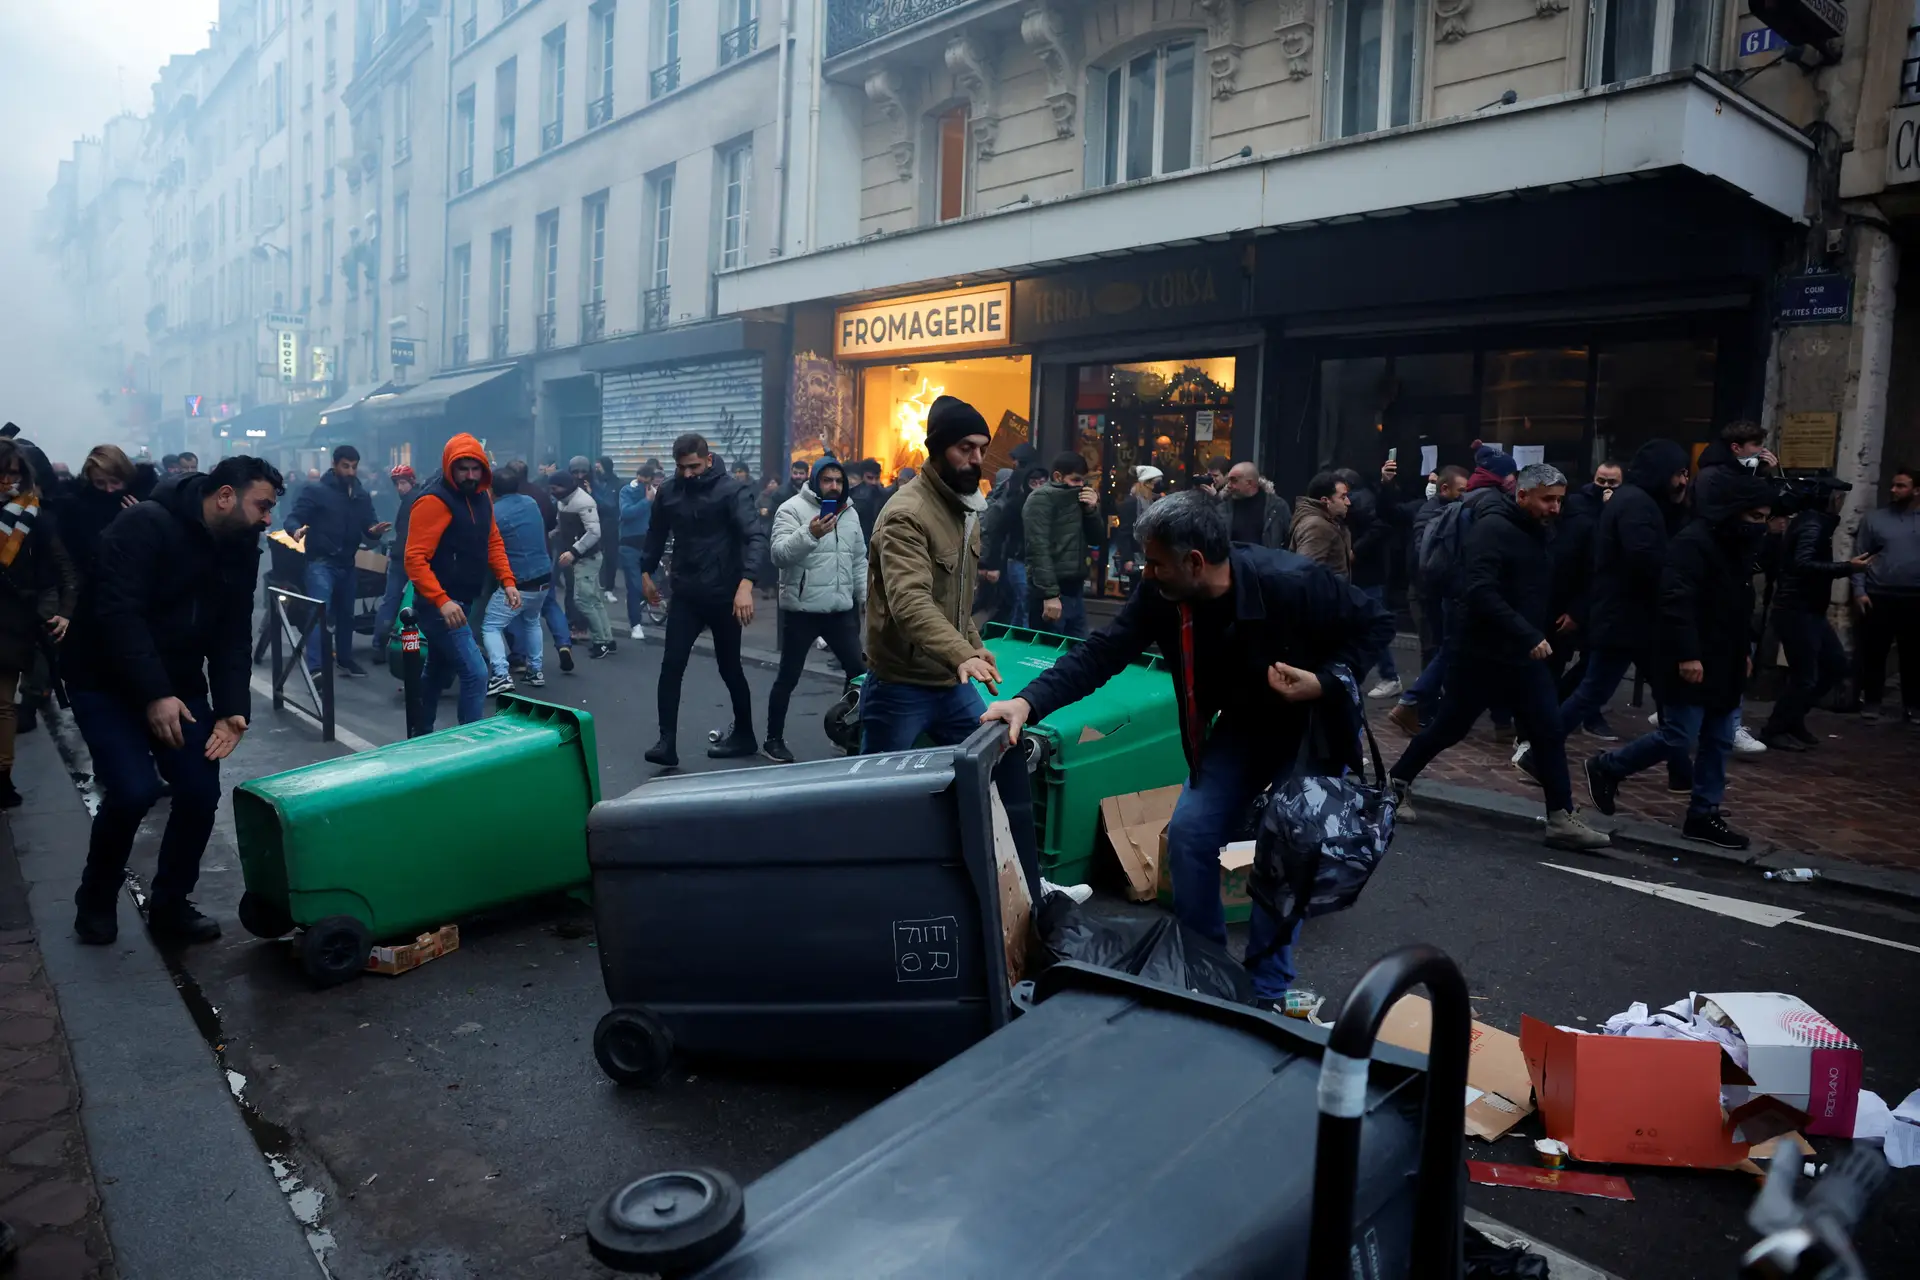 Confrontos entre manifestantes curdos e polícia em Paris após ataque a tiro